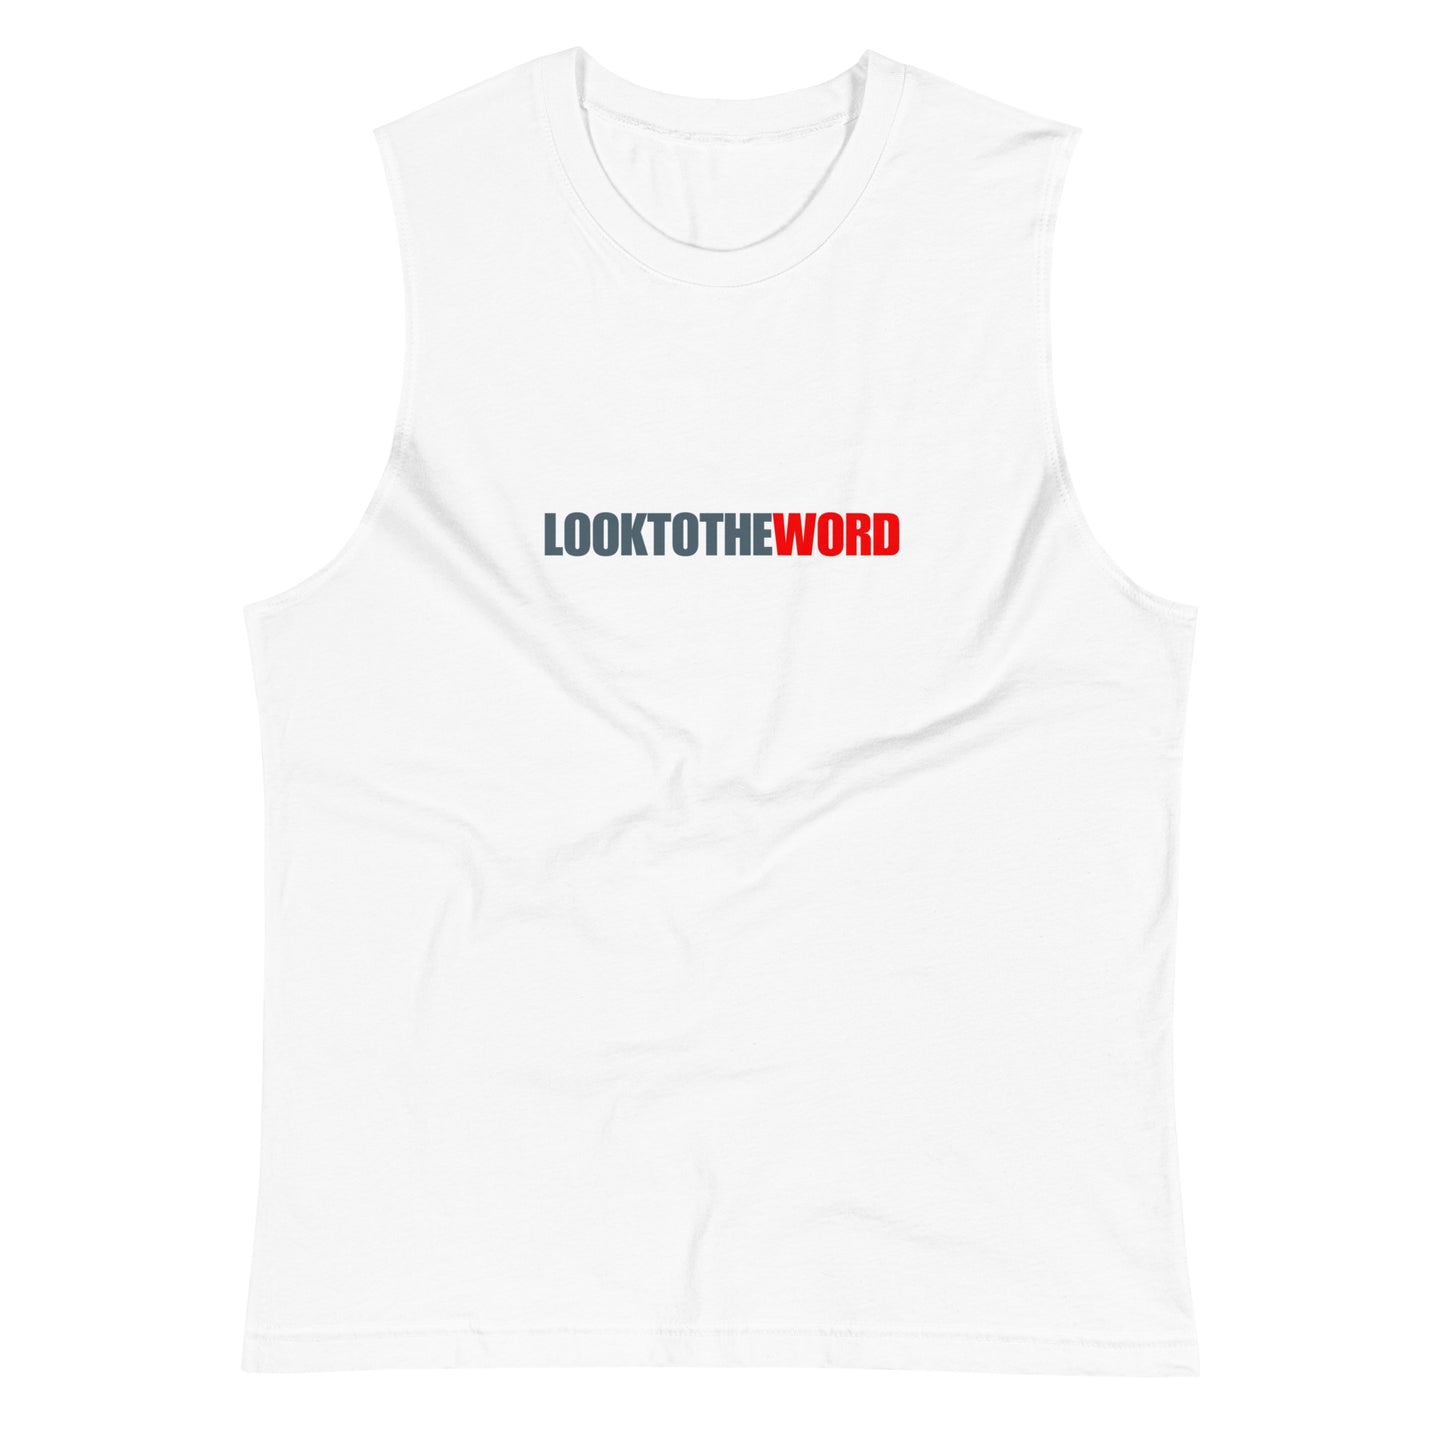 LTW Muscle Shirt